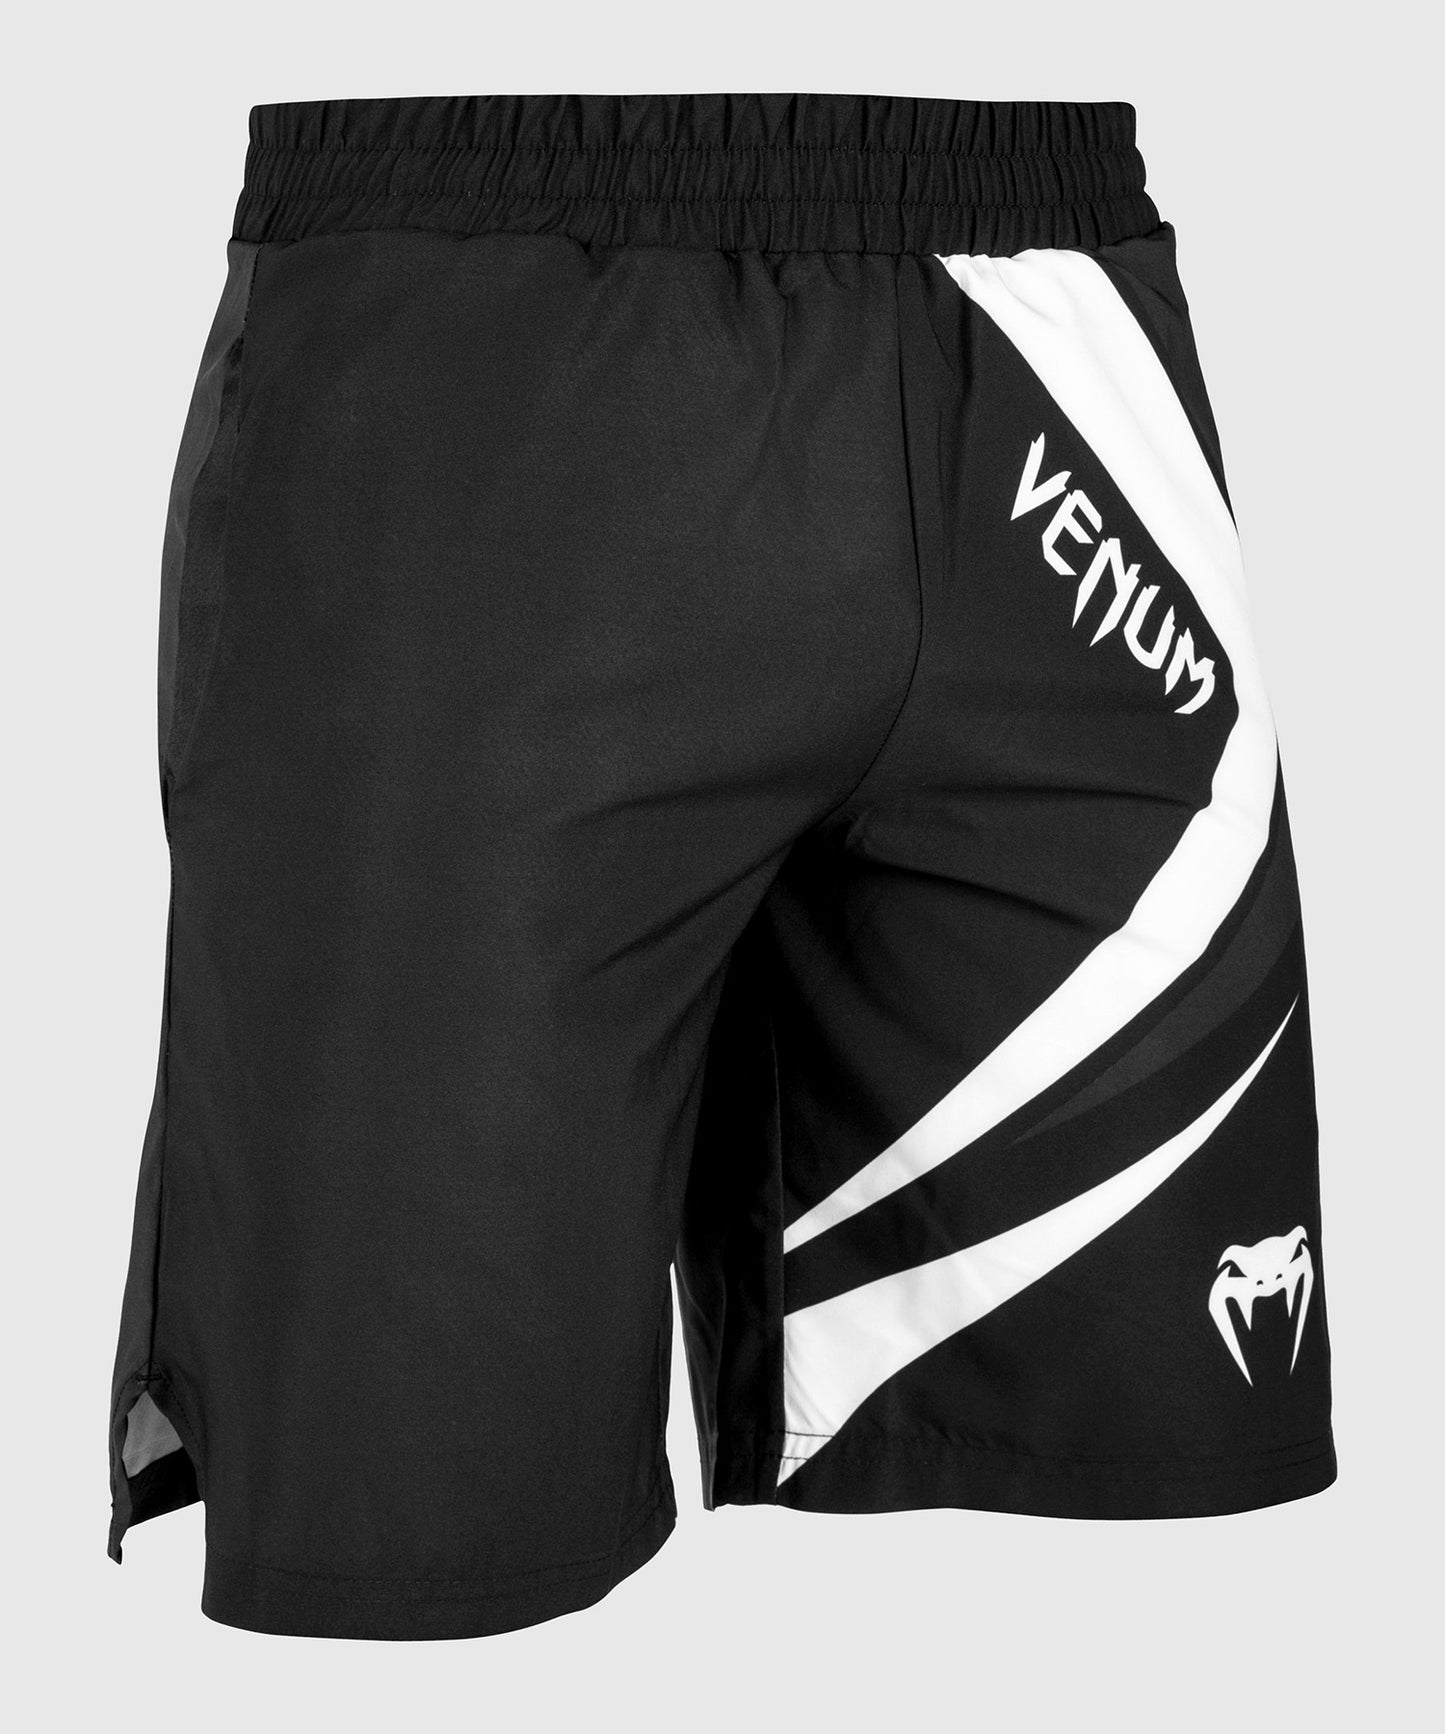 Venum Contender 4.0 Fitness-Shorts - Schwarz/Grau-Weiß